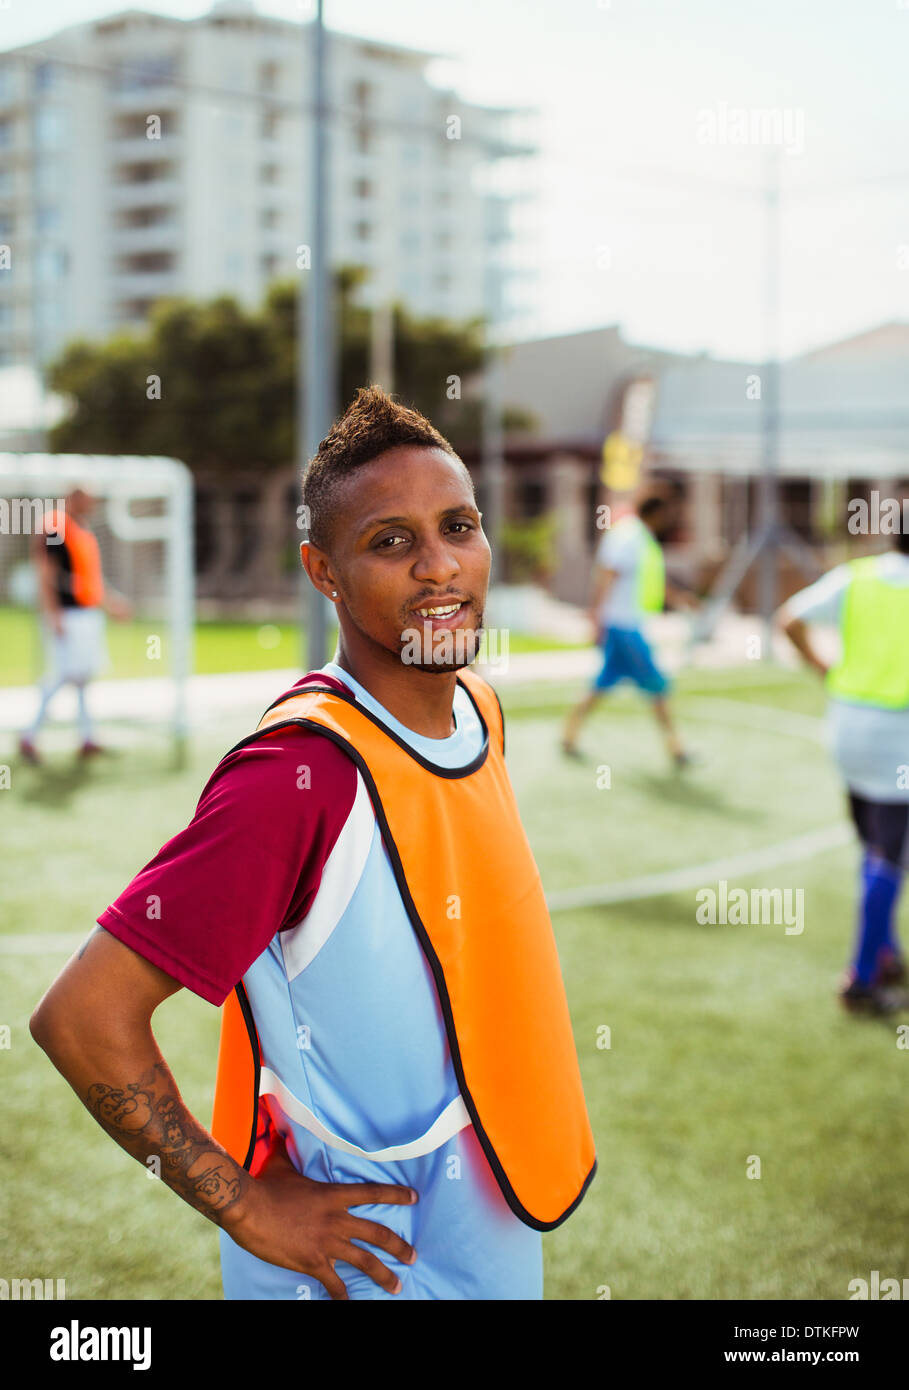 Soccer player smiling sur terrain Banque D'Images